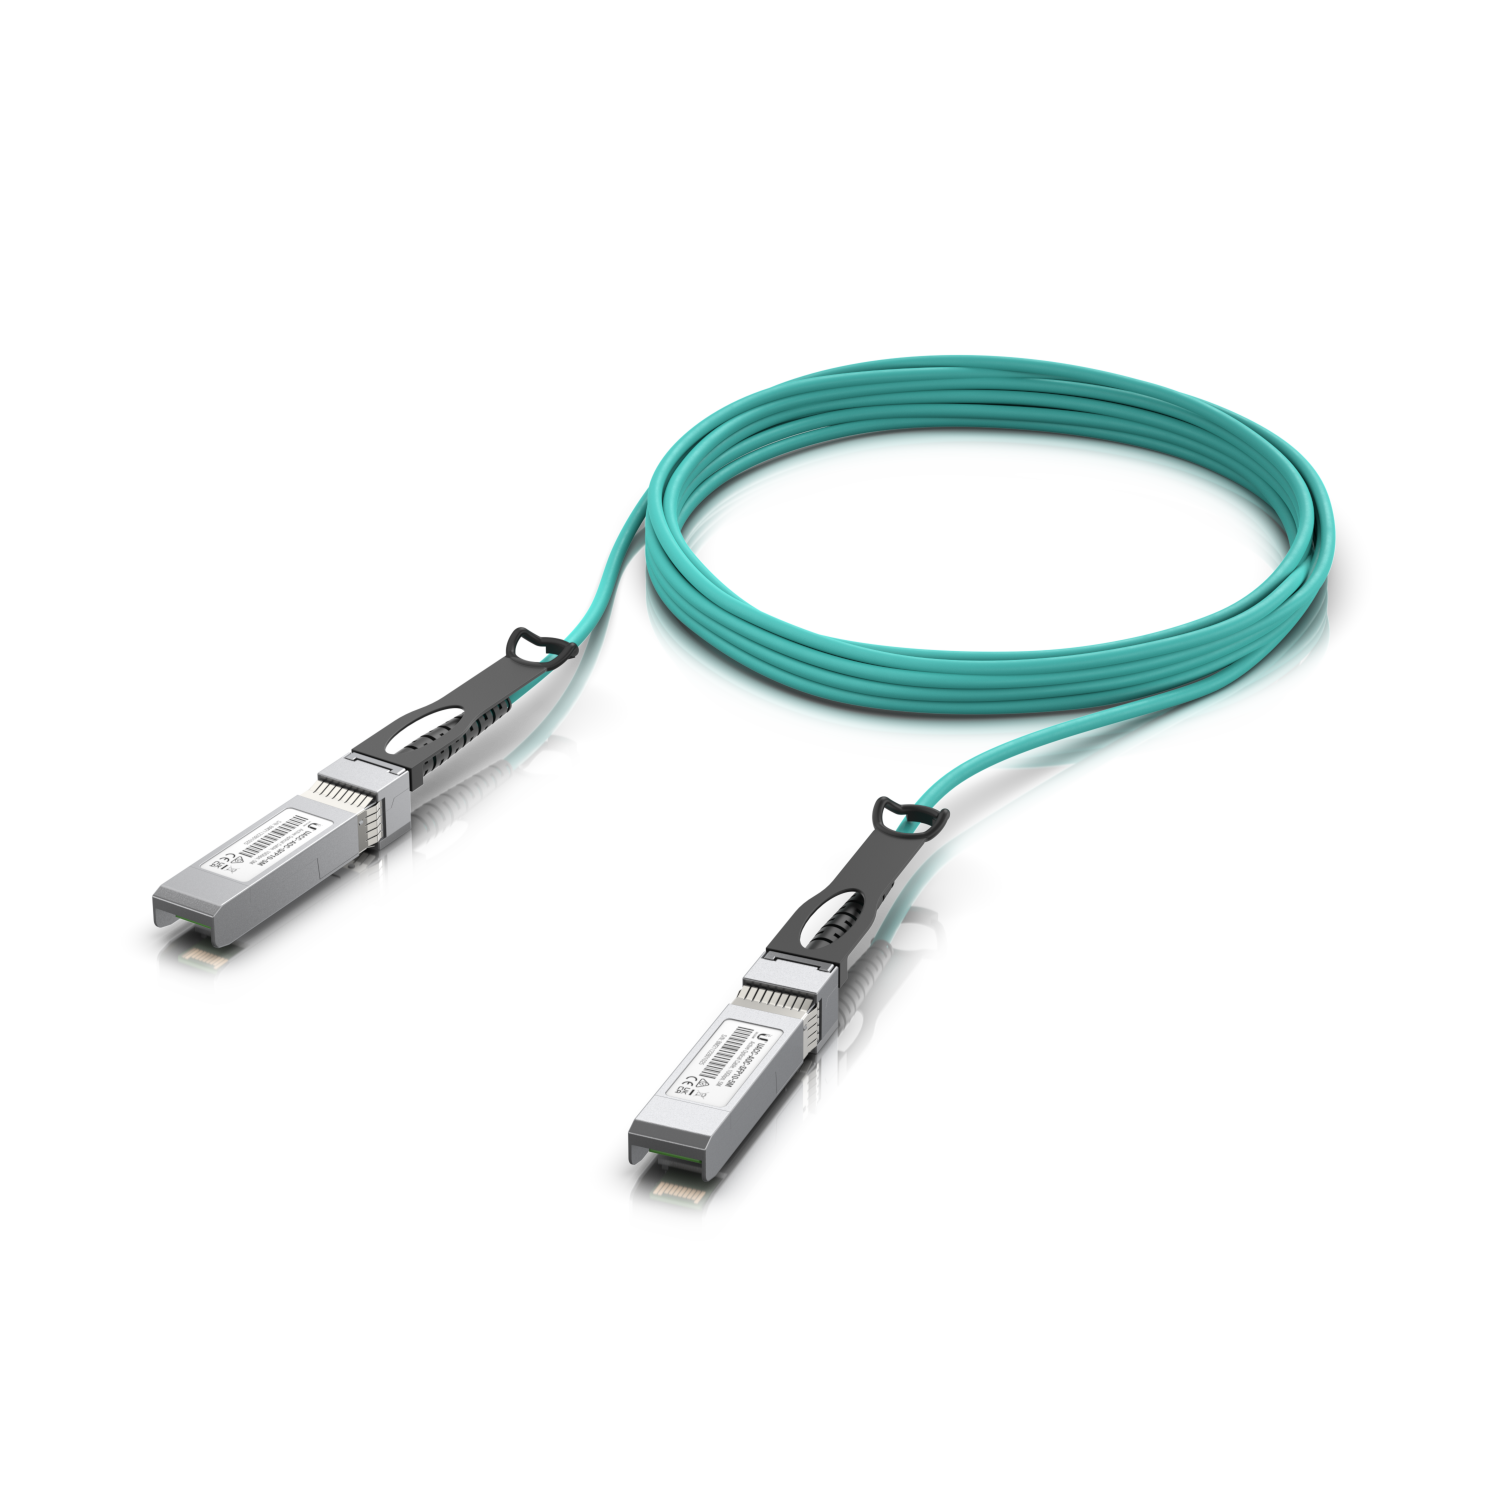 UniFi LR Direct Attach Cable, 5m